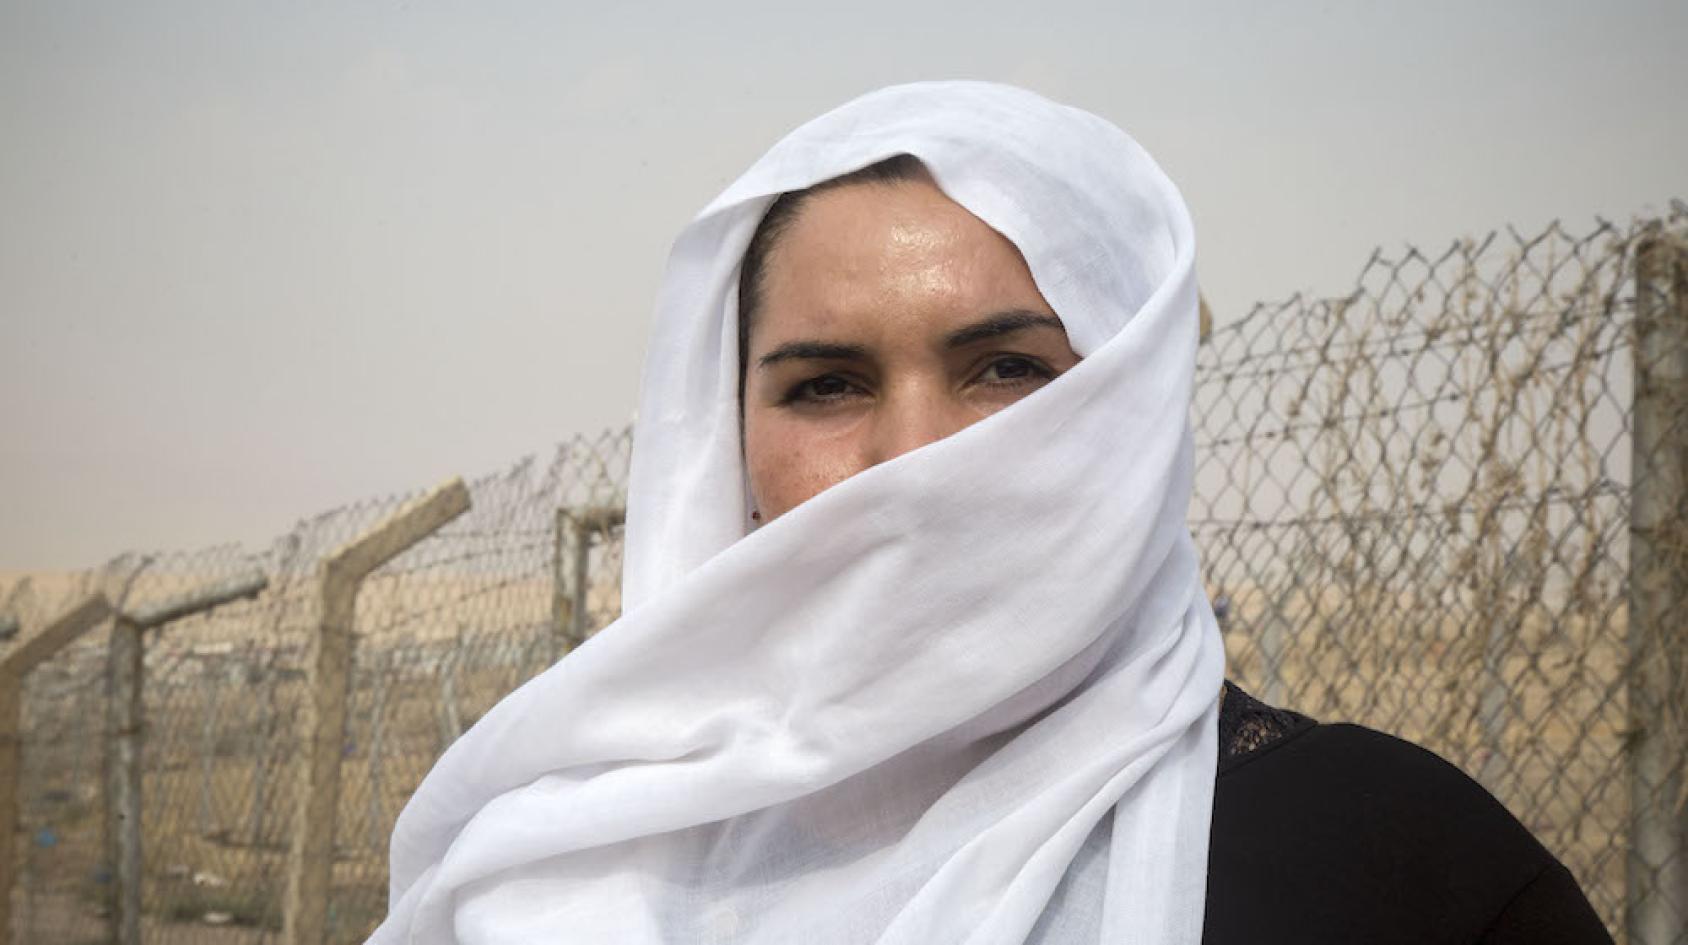 صورة مؤثرة لعيون امرأة خلف وشاح أبيض بالقرب من سياج معدني.